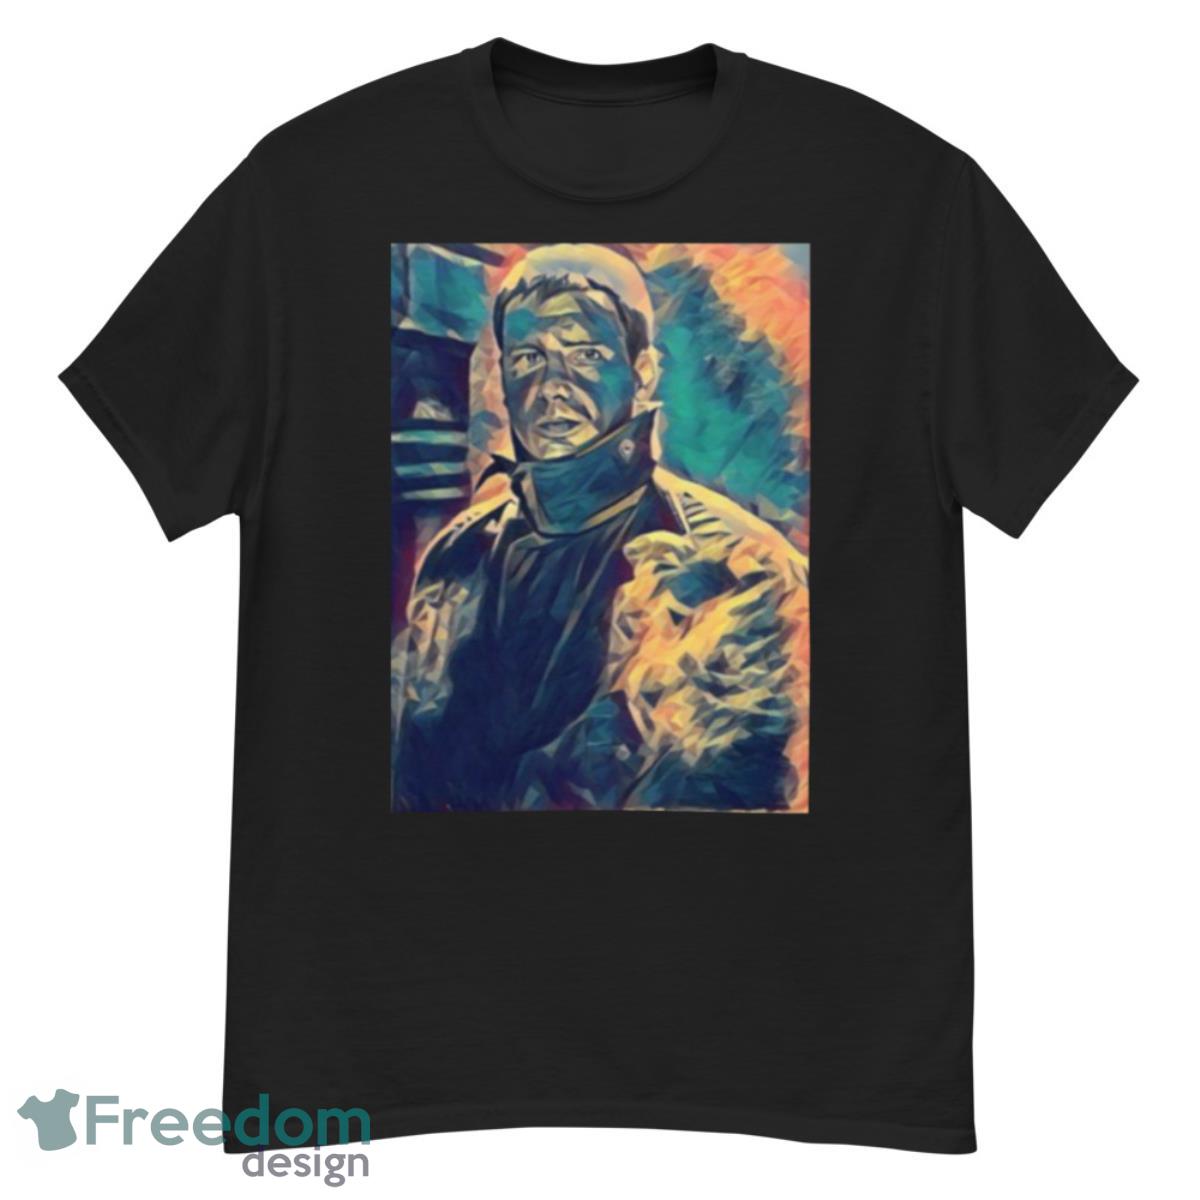 Rick Deckard From Blade Runner shirt - G500 Men’s Classic T-Shirt